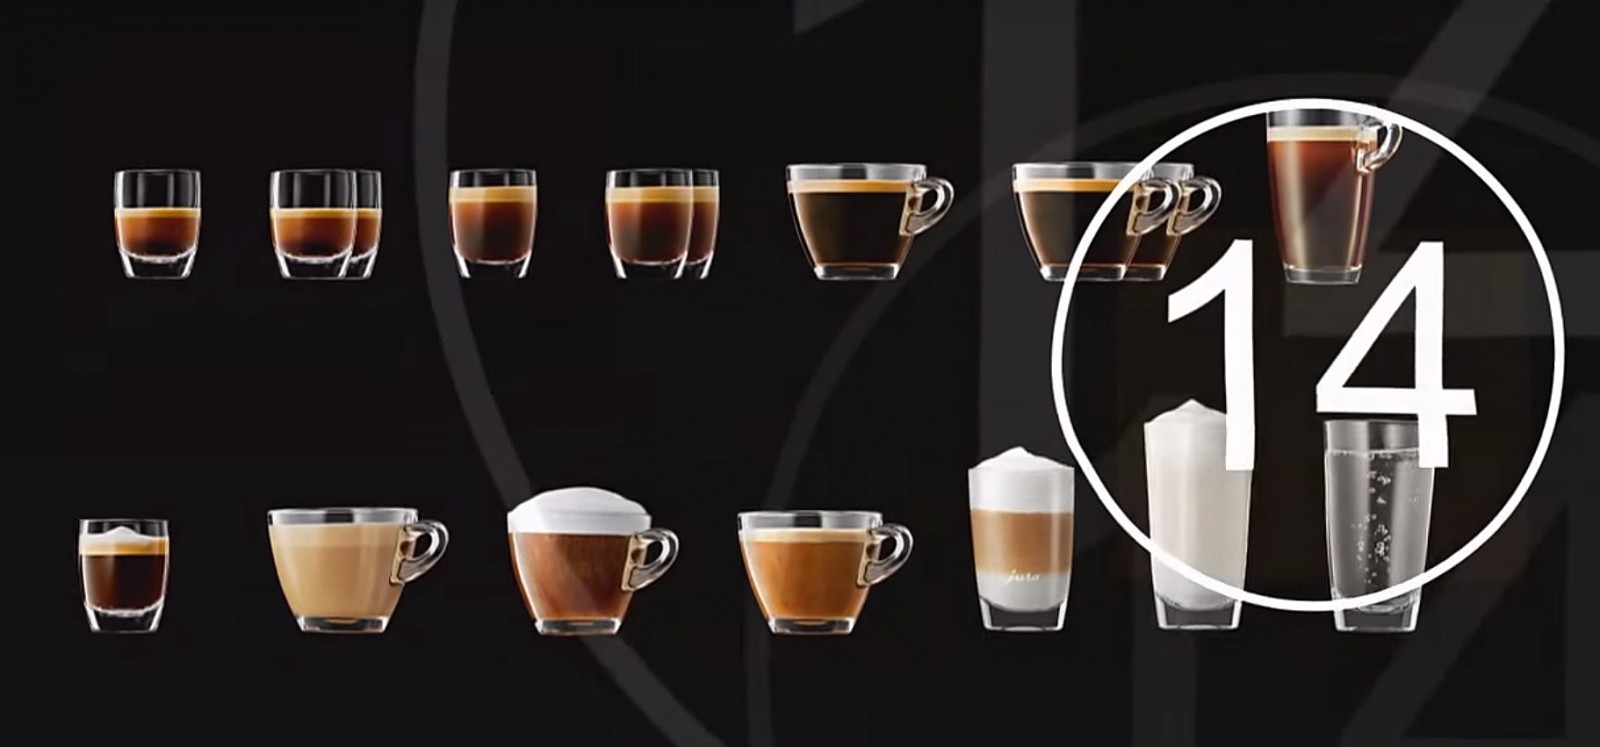 jura f9 - 14 coffe specialites - coffe cups - jura coffe